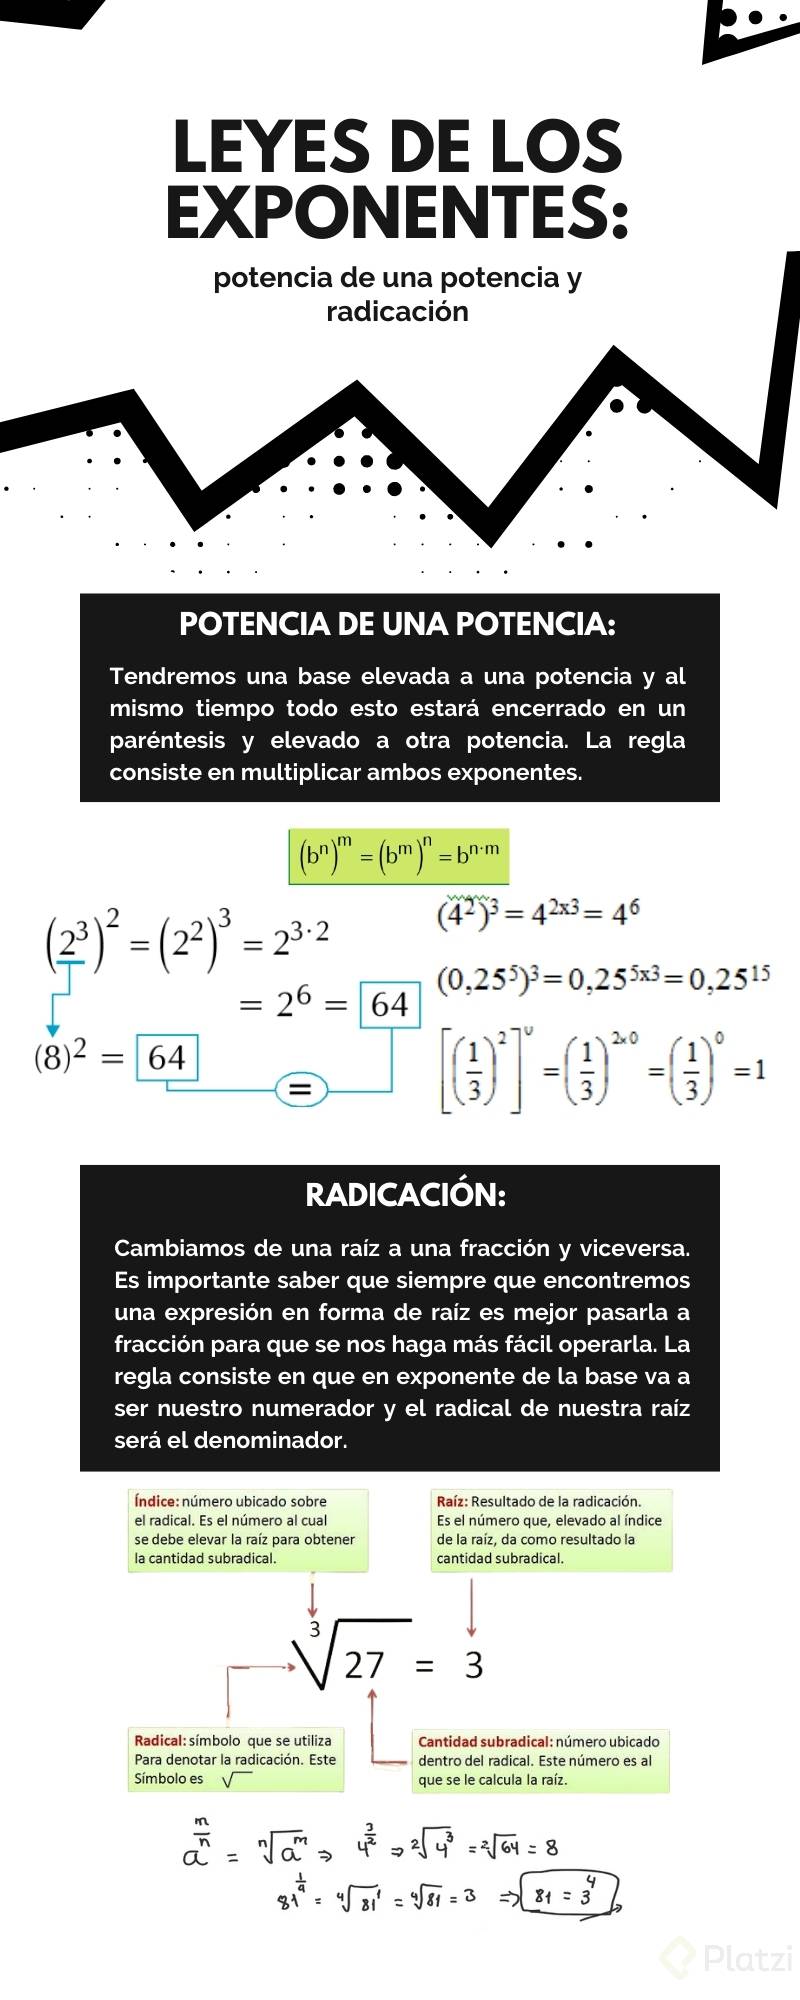 clase 5-34 Leyes de los exponentes potencia de una potencia y radicaciÃ³n 1.jpg